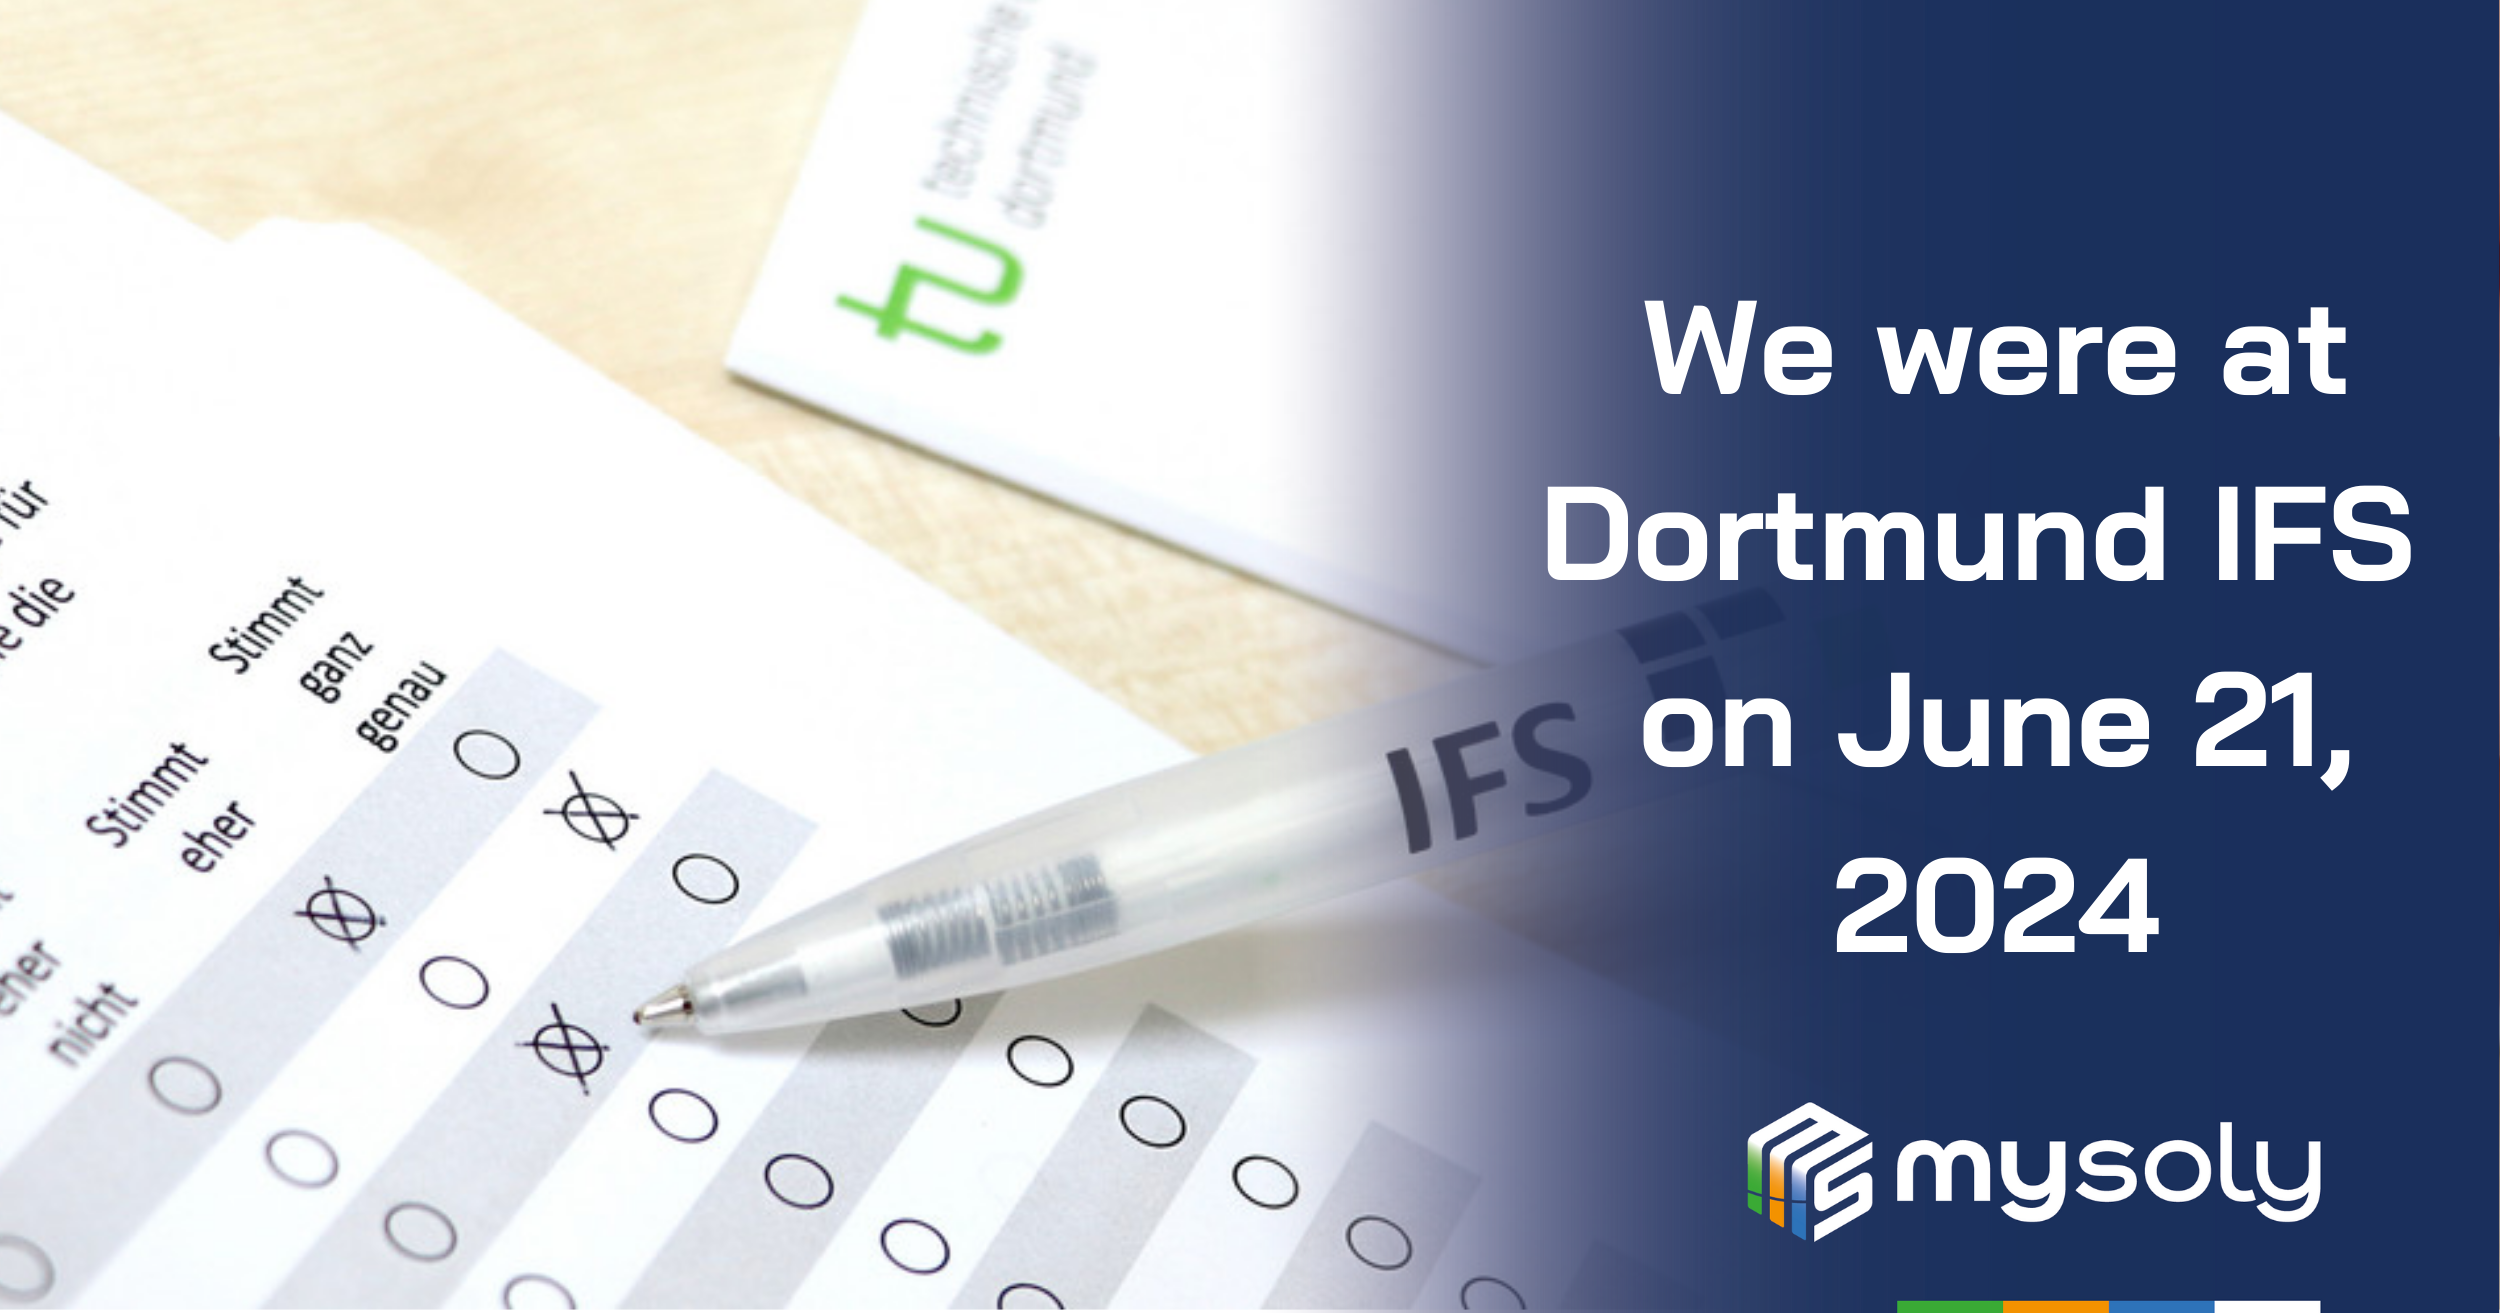 we were at Dortmund IFS on June 21, 2024-featured